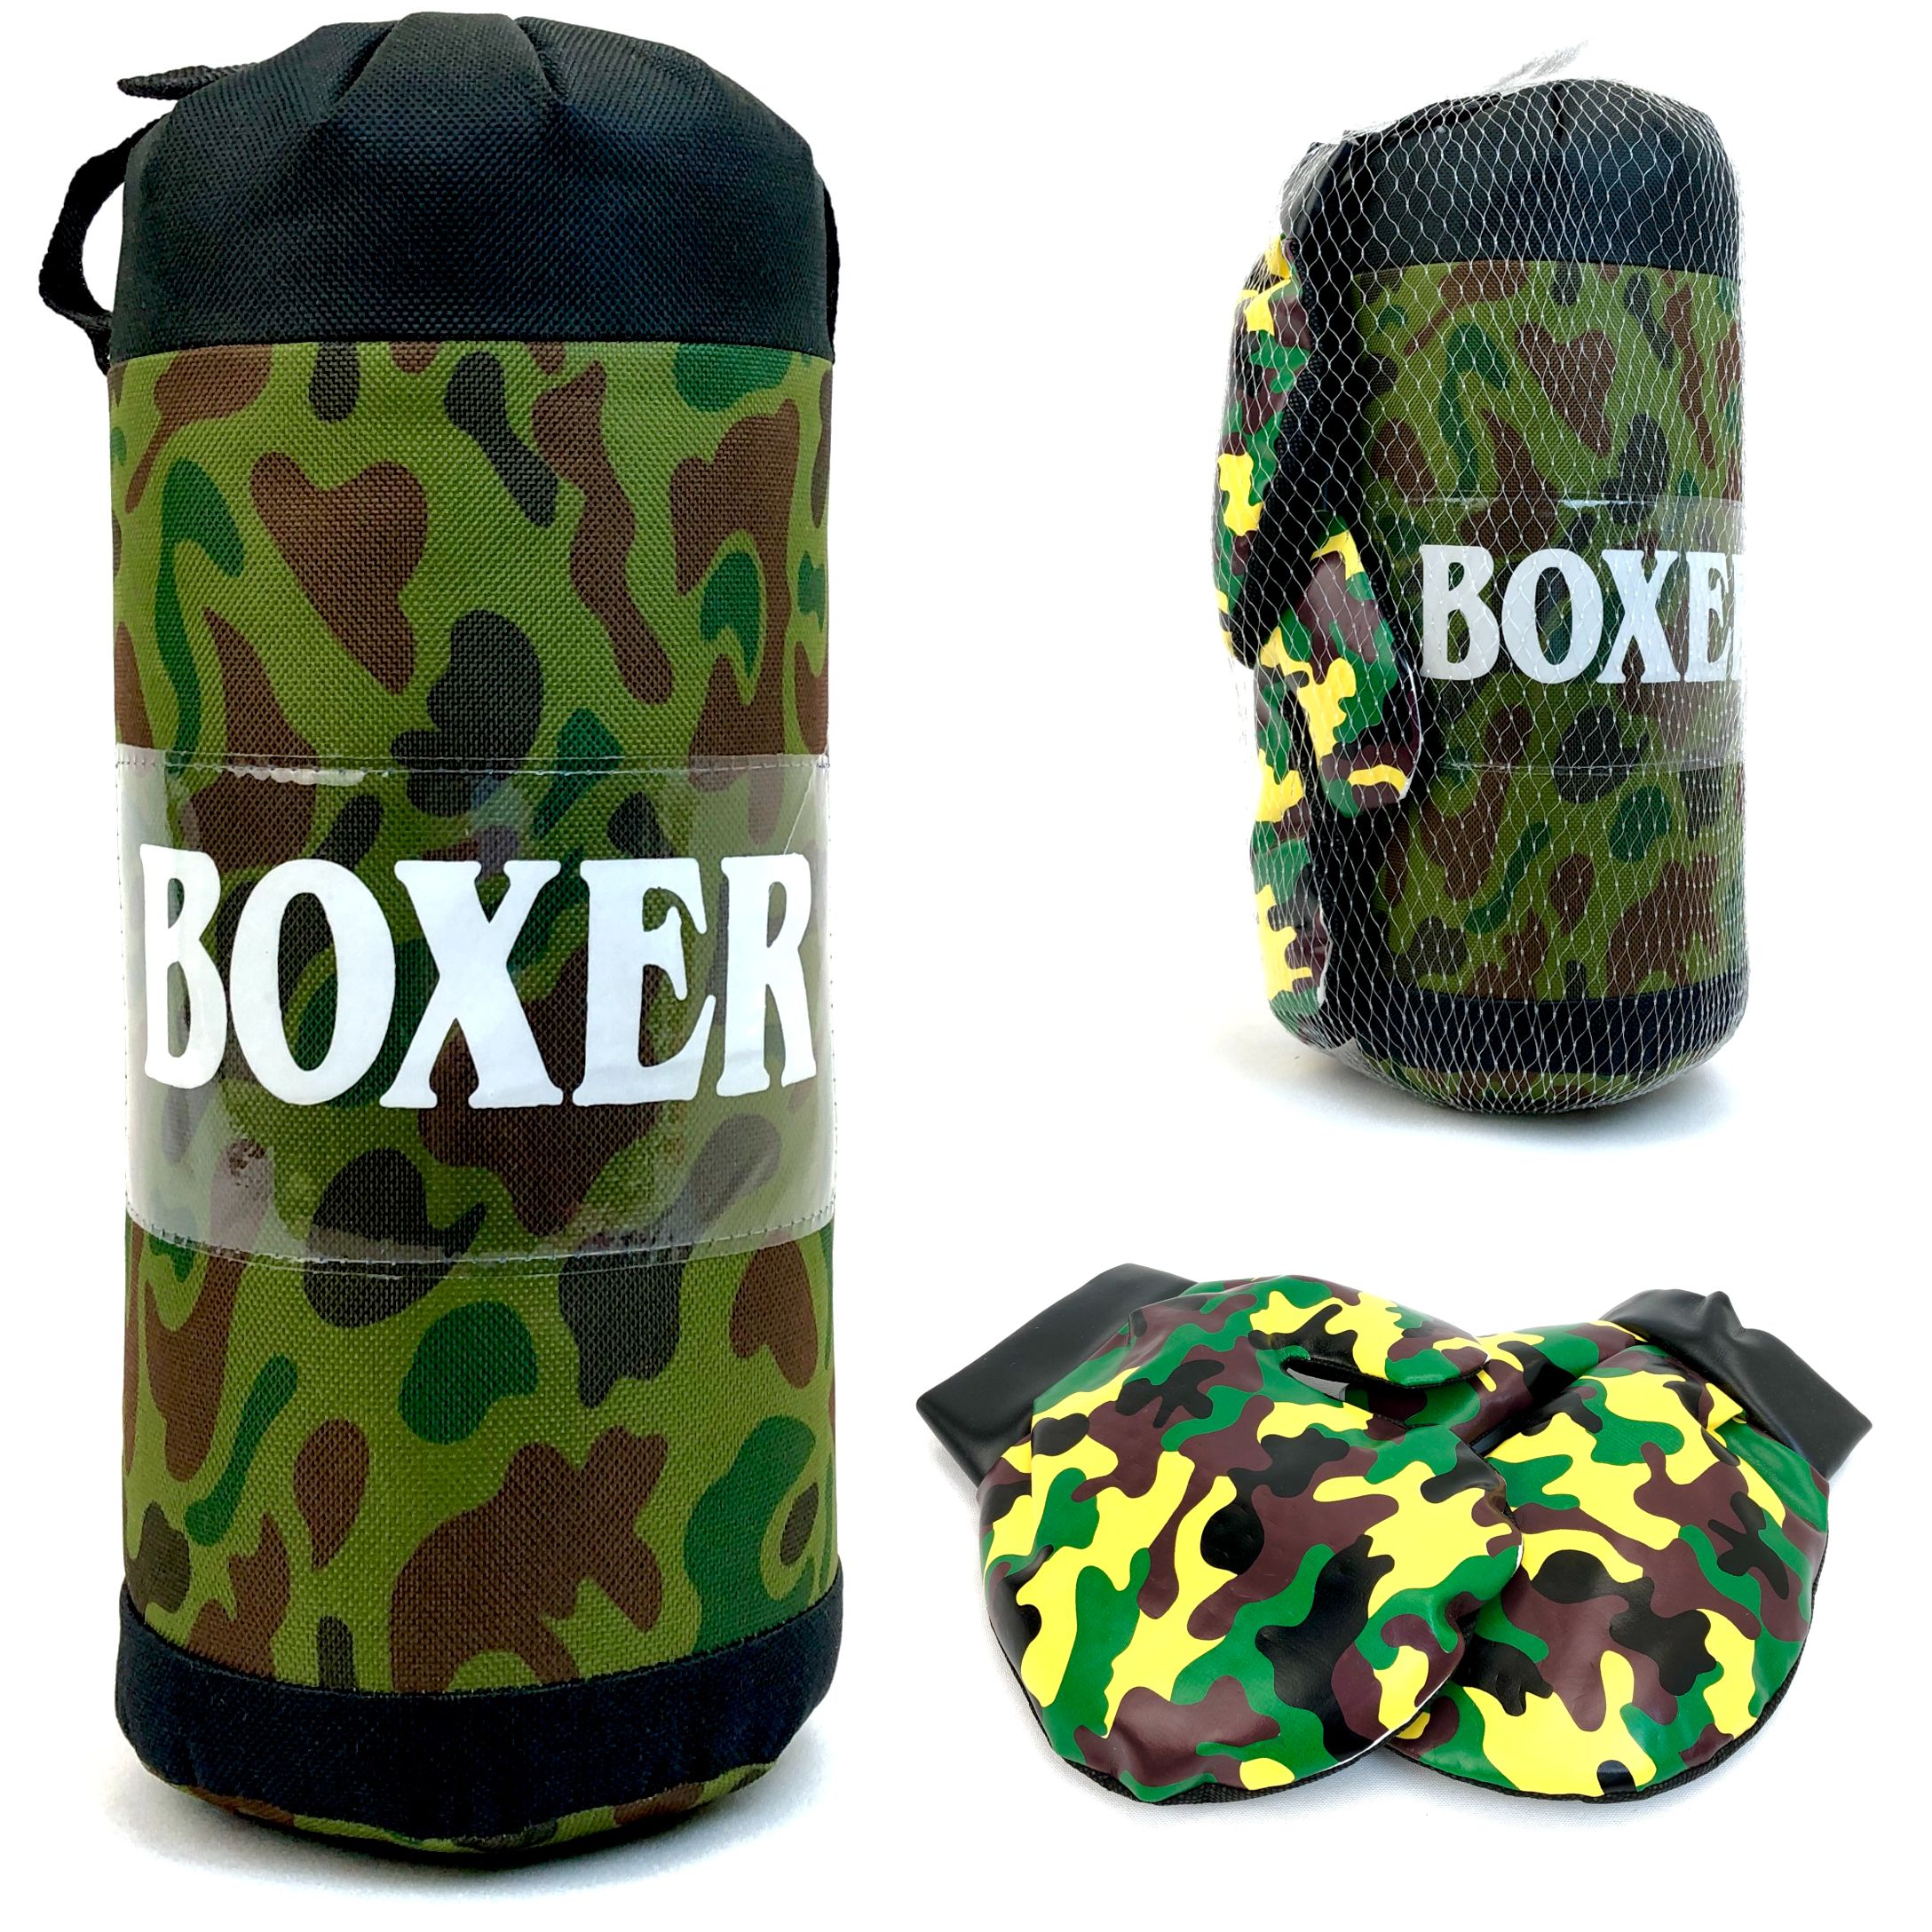 Детский боксерский набор Kings Sport Boxer, груша, перчатки детские, высота 32 см